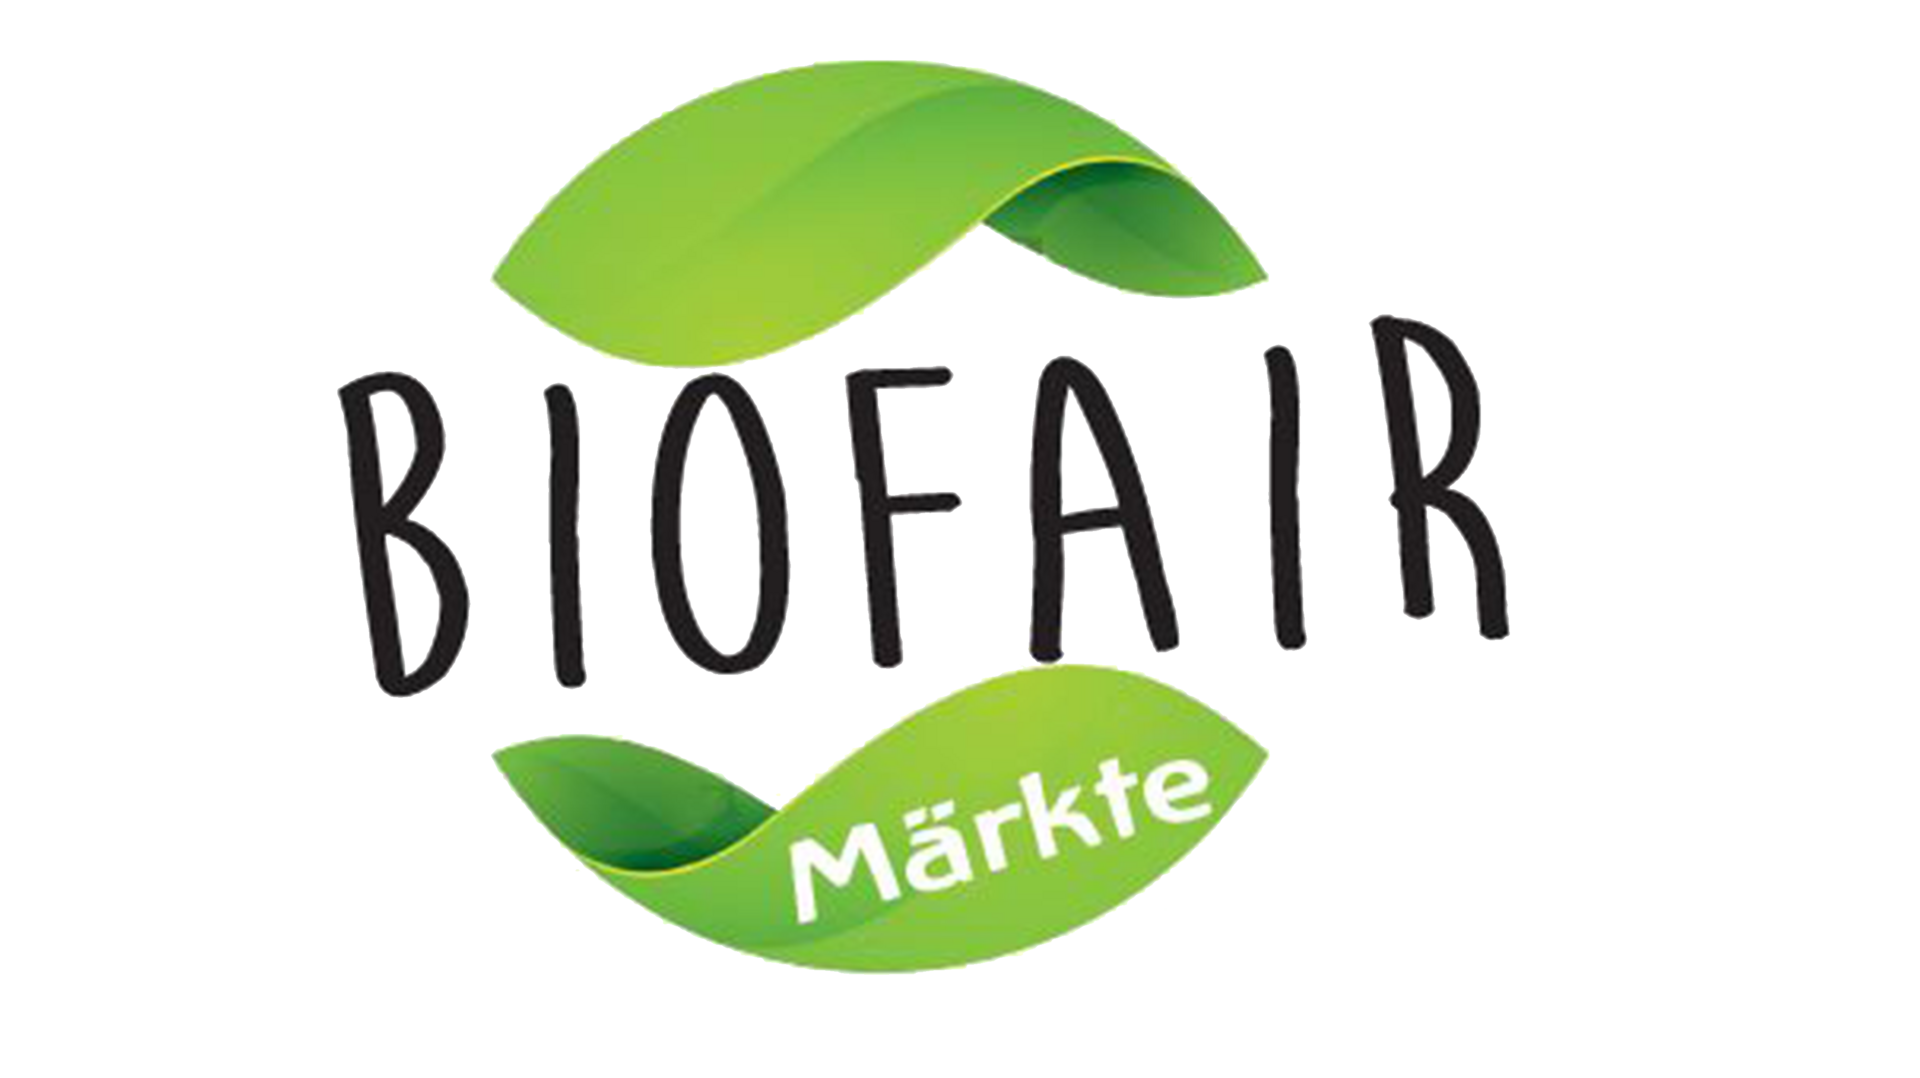 Biofair-Maerkte.png